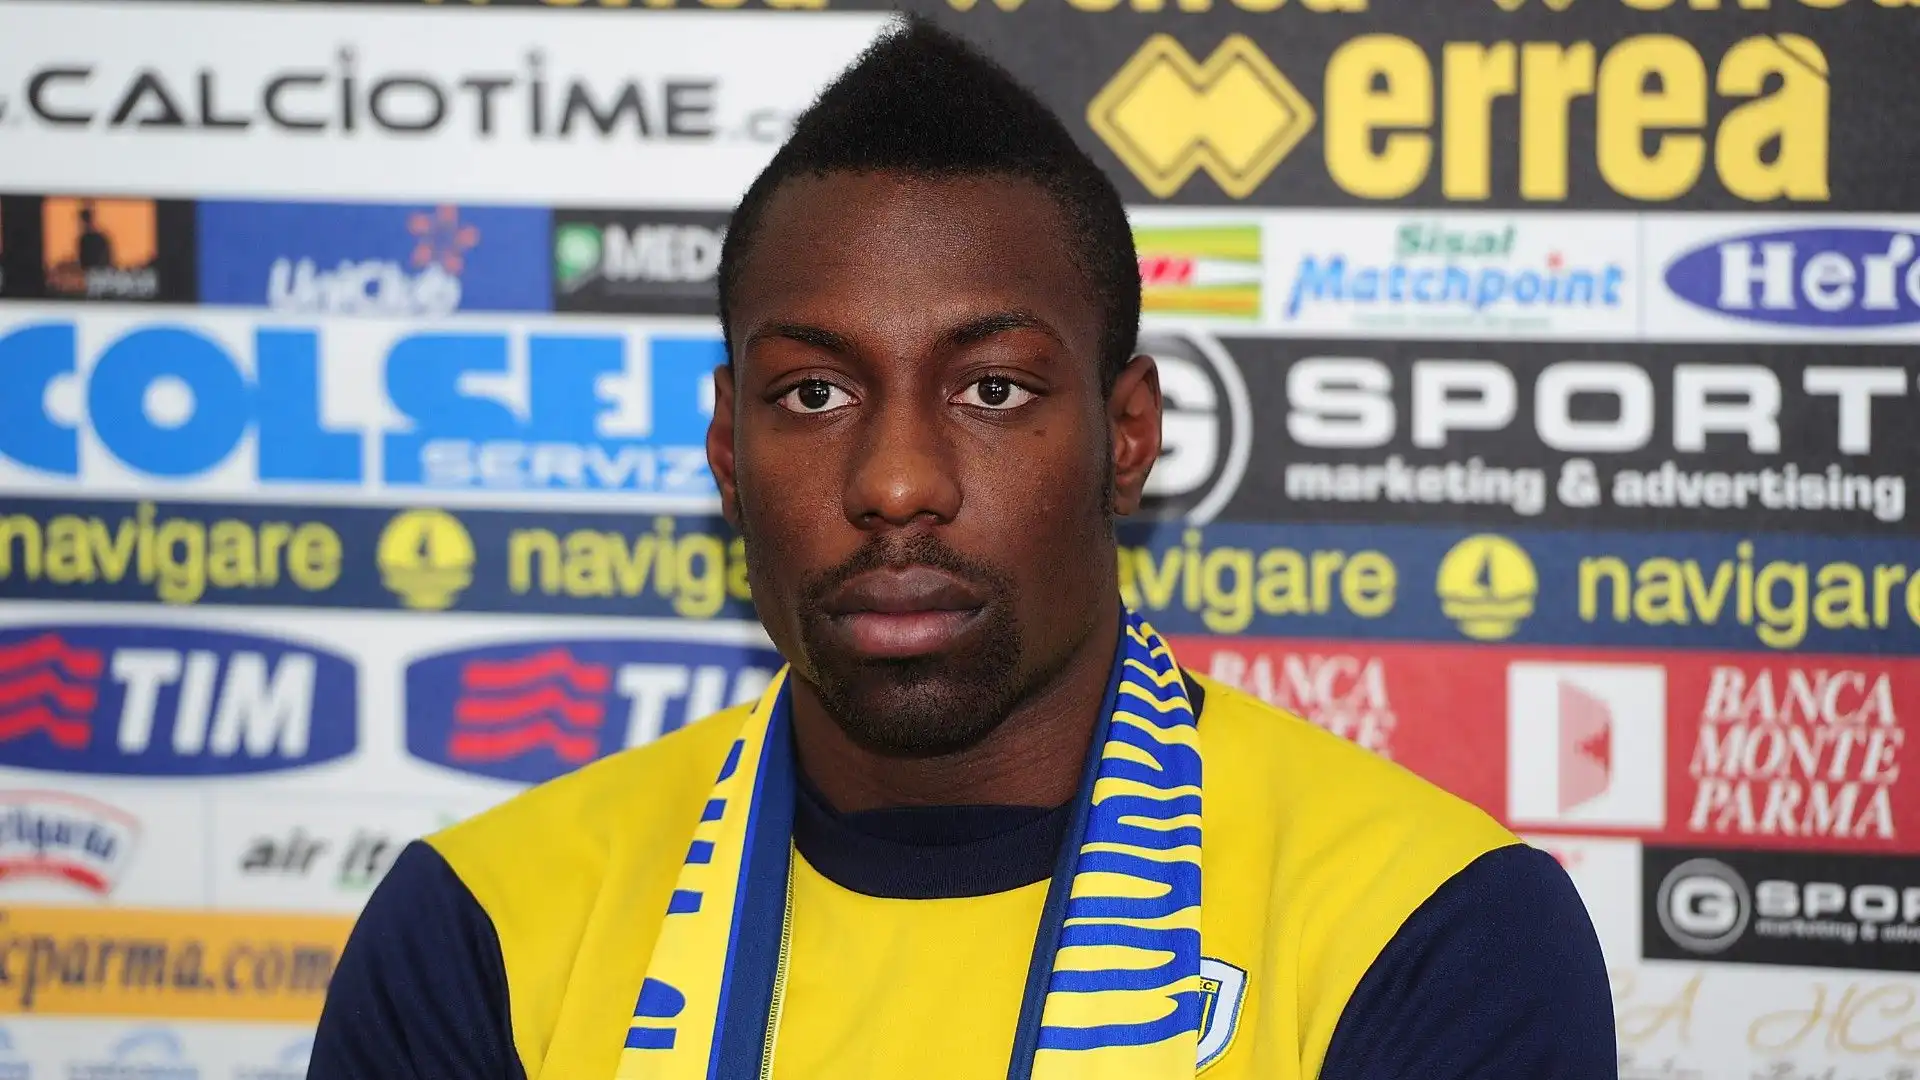 Dopo il prestito al Bari il Parma l'ha acquistato a titolo definitivo nel 2012 e l'ha girato in prestito allo Spezia